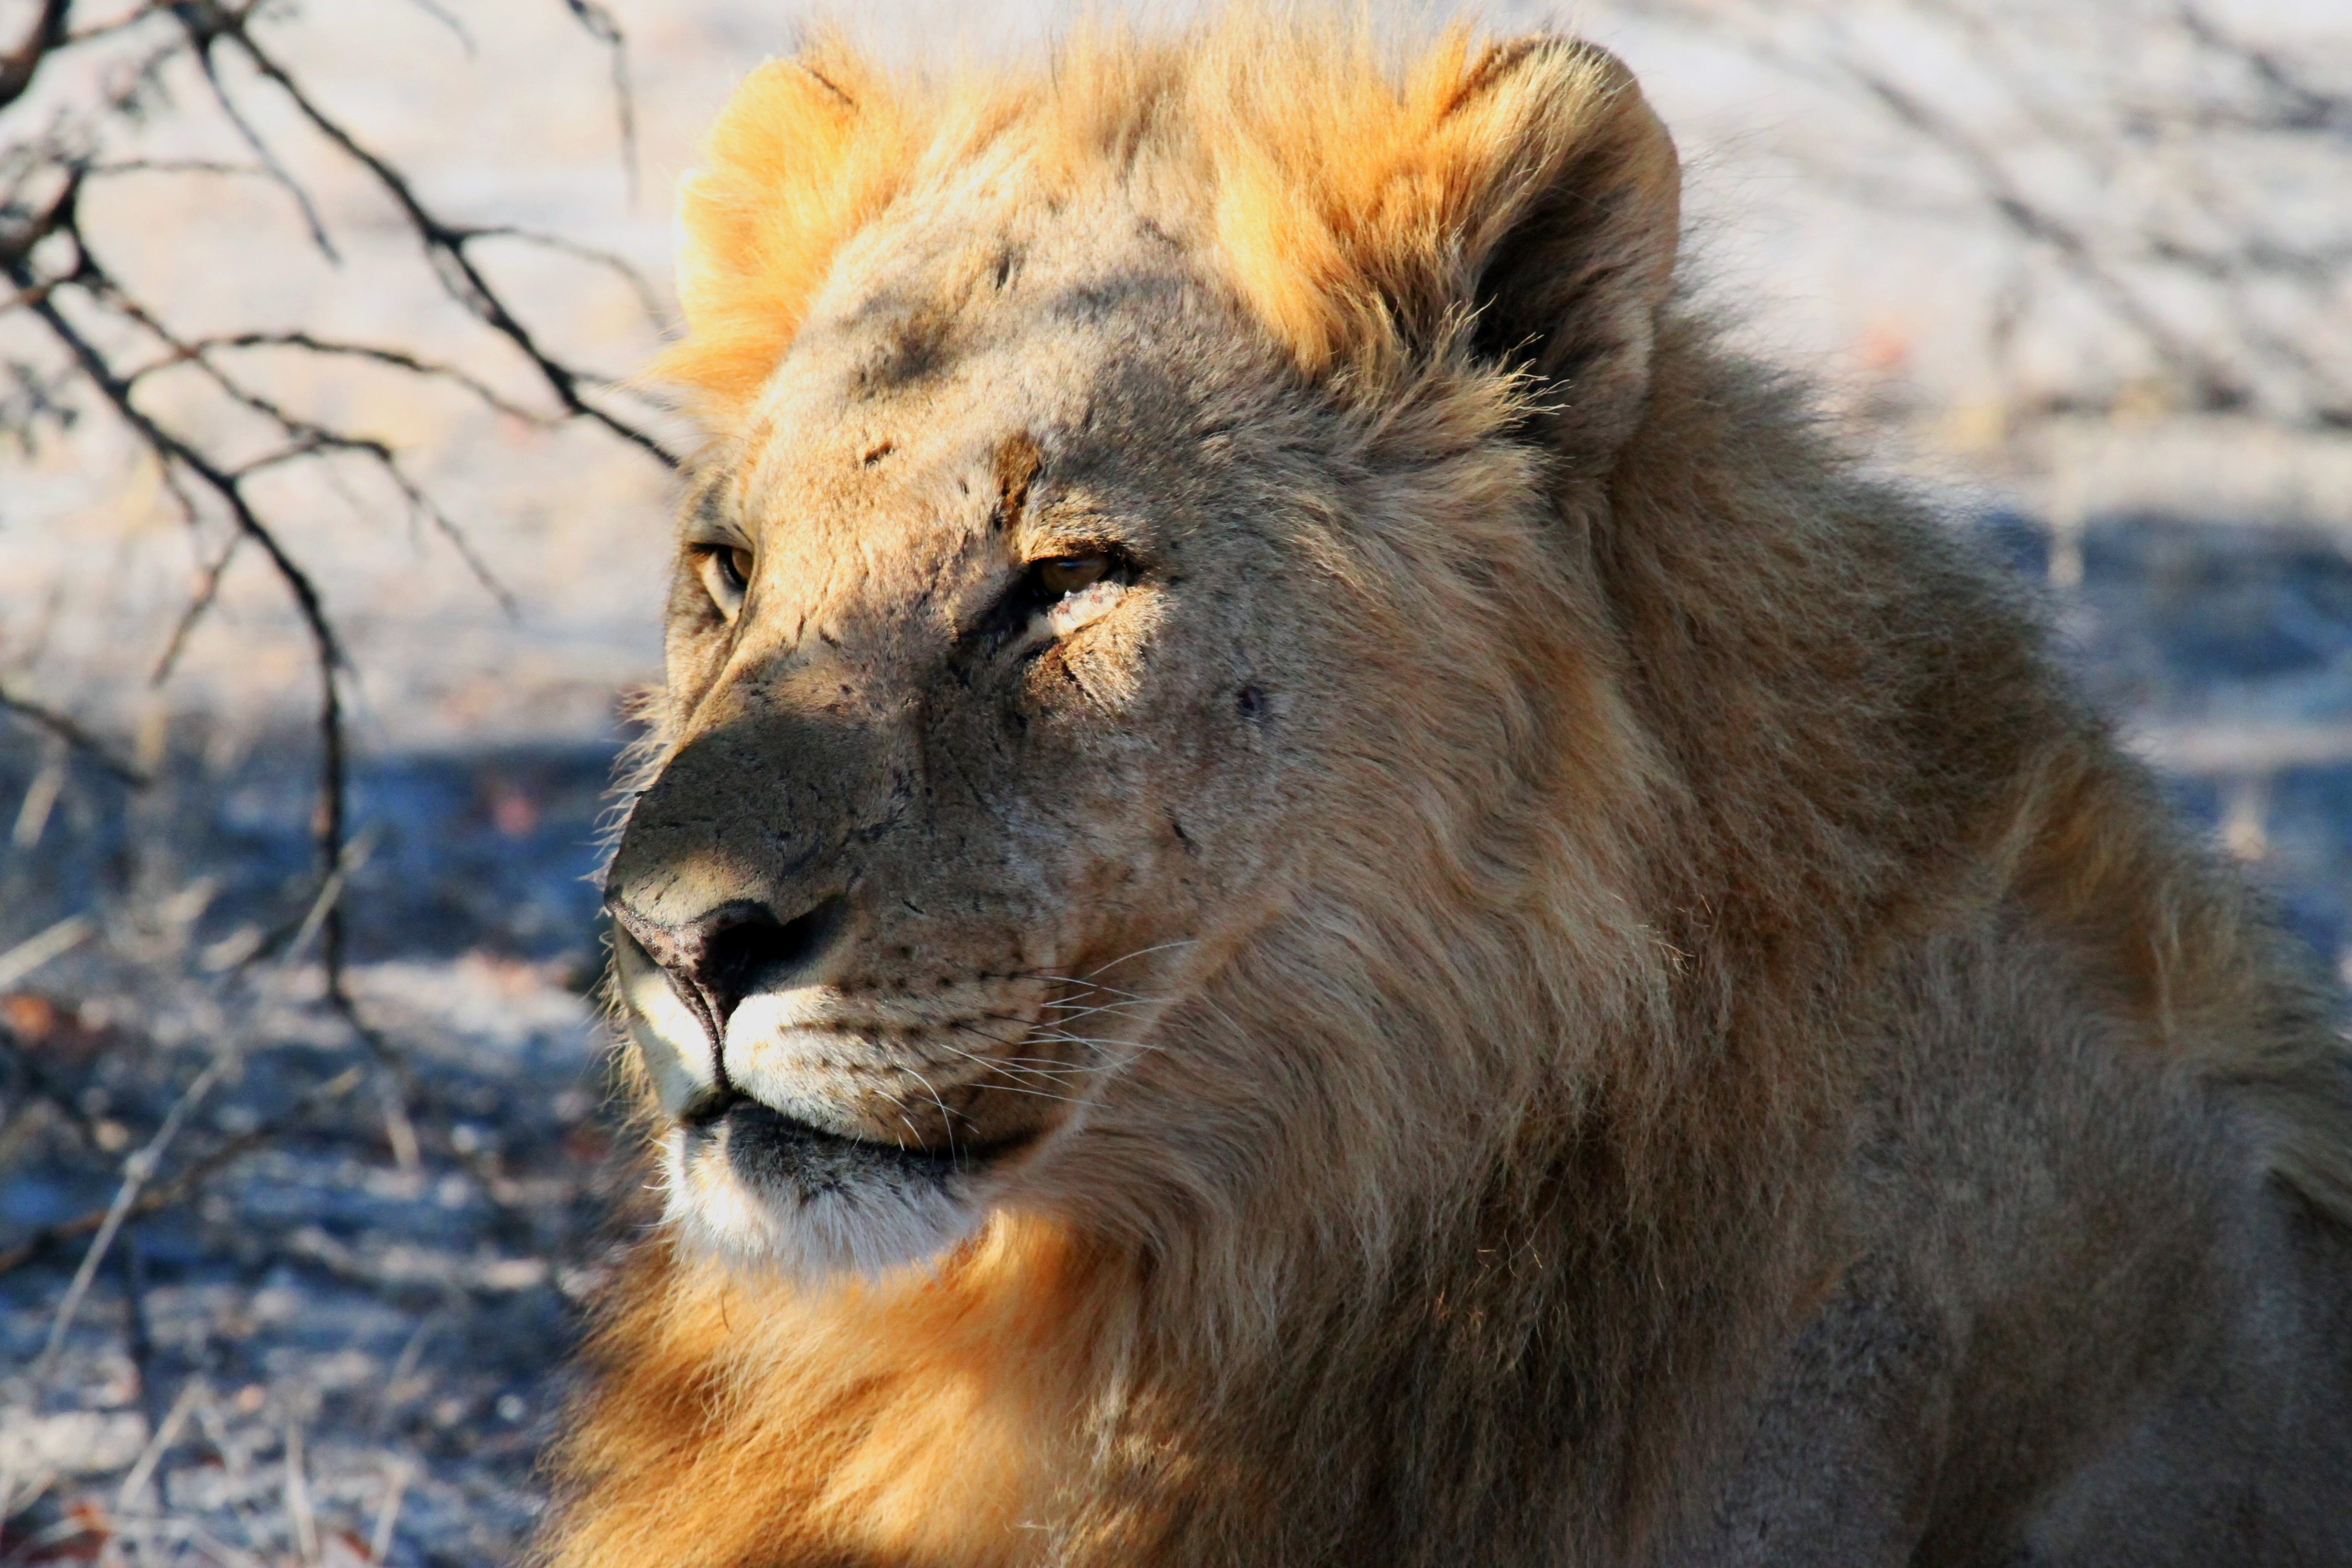 Safari, Africa, Etosha, Lion, Namibia, one animal, animals in the wild